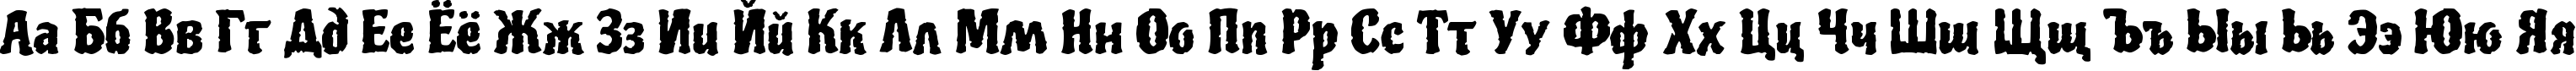 Пример написания русского алфавита шрифтом Piedra